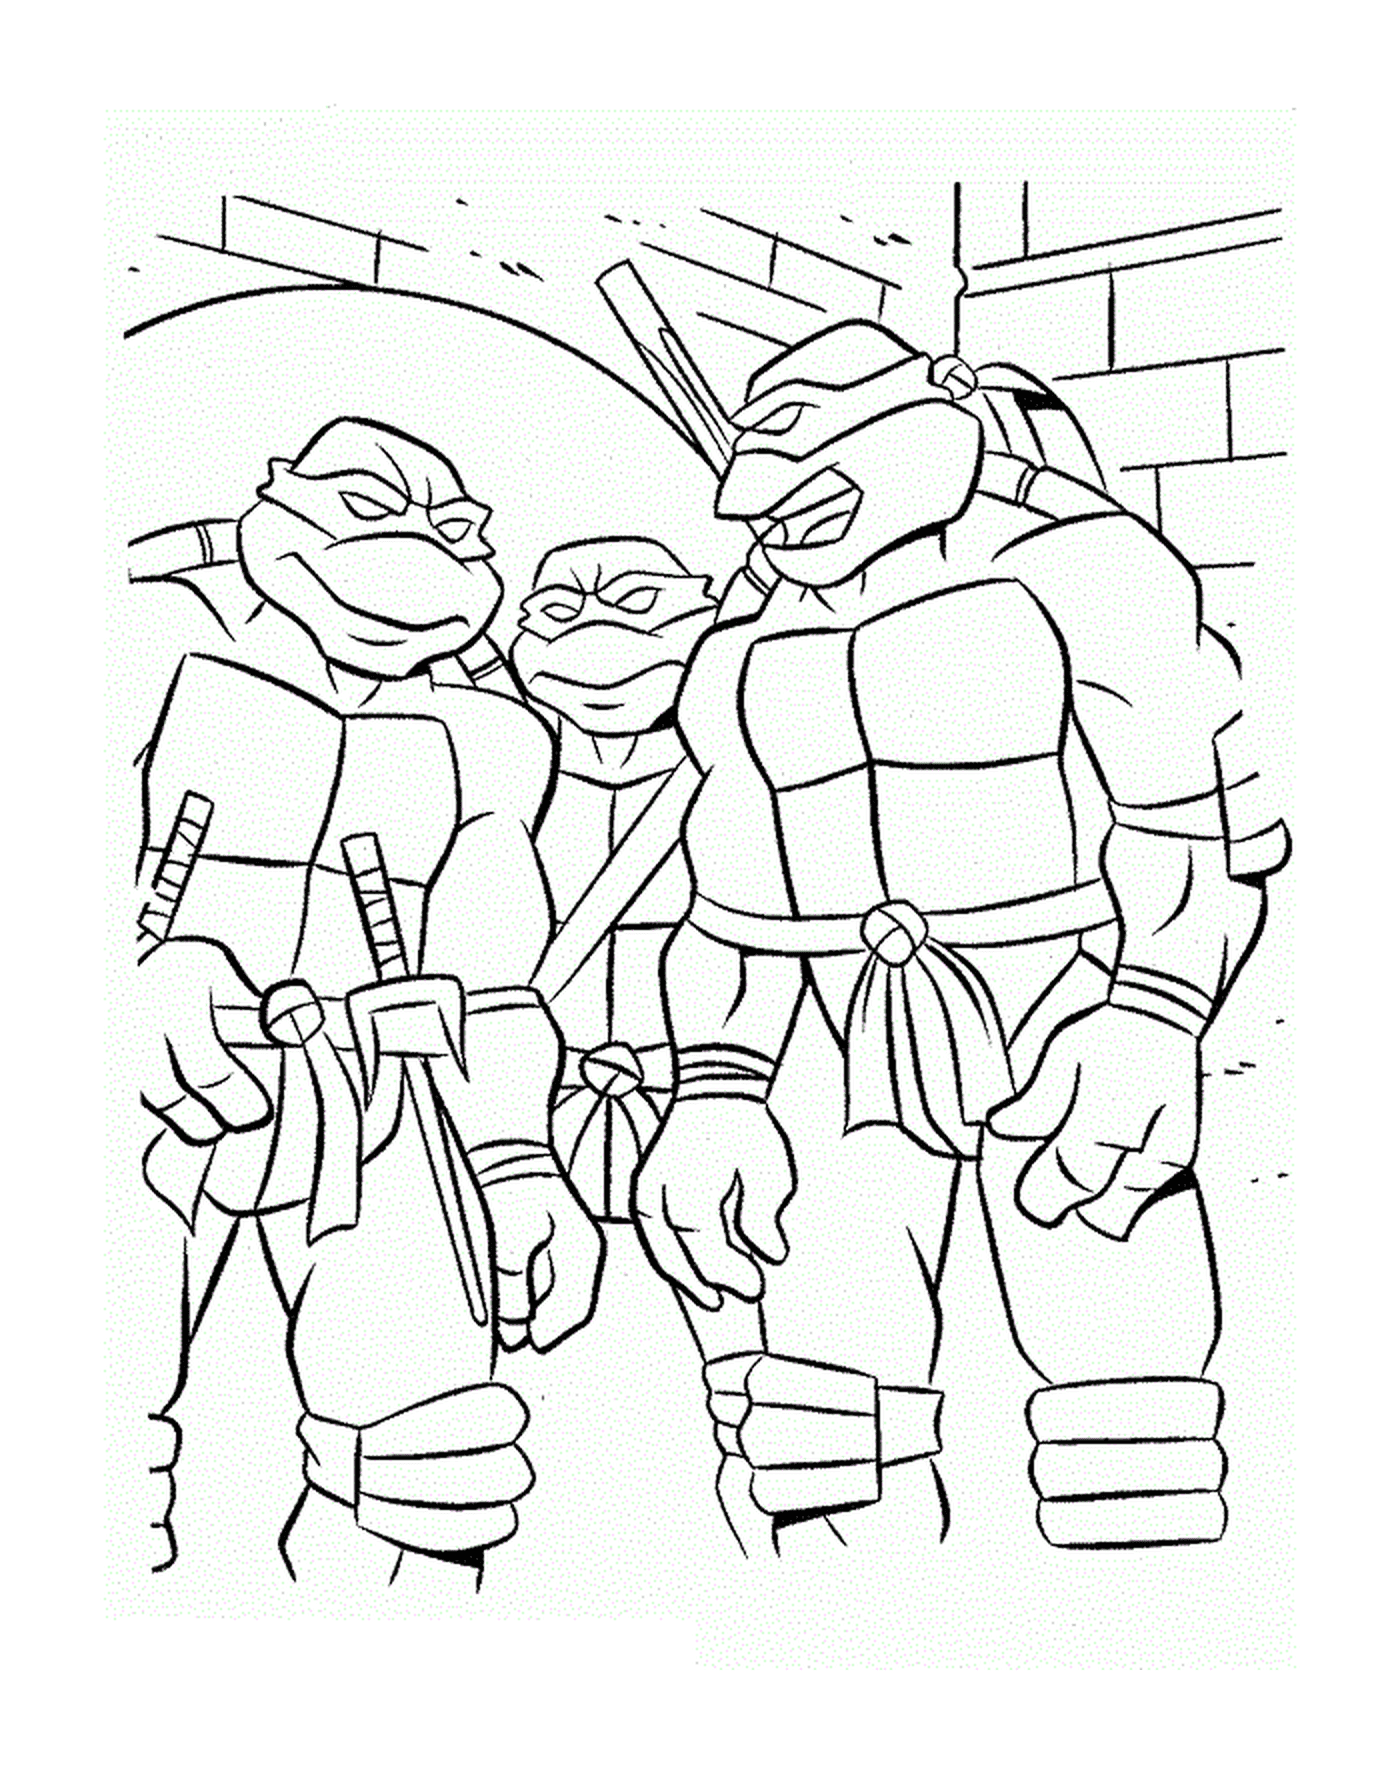  Team of Ninja Turtles 